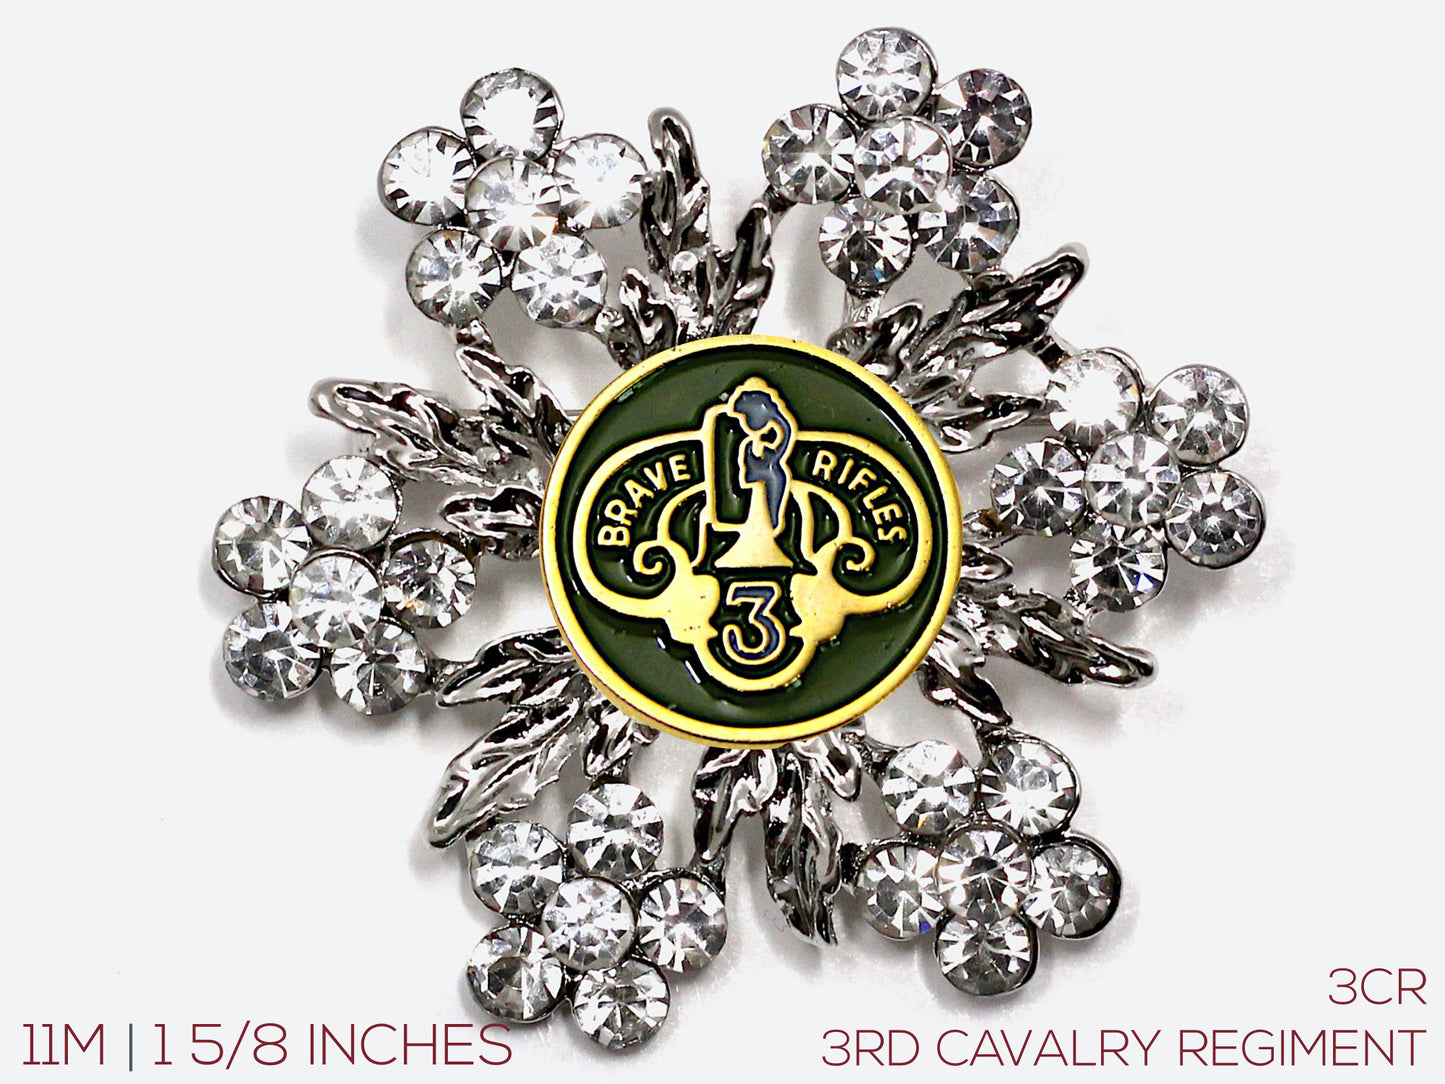 3rd Cavalry Regiment Brooch